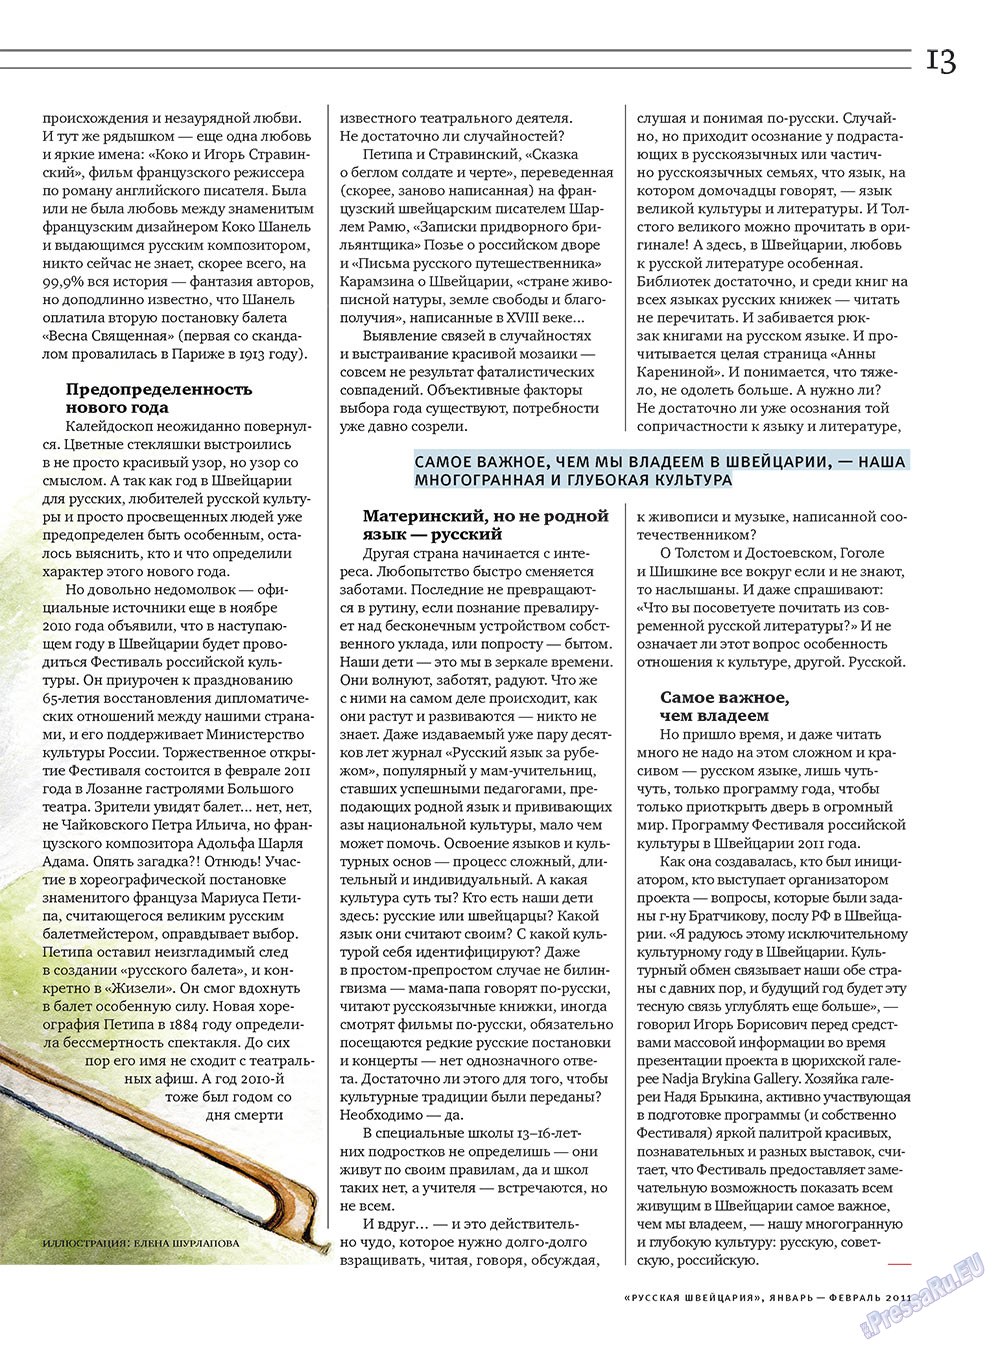 Русская Швейцария, журнал. 2011 №1 стр.13